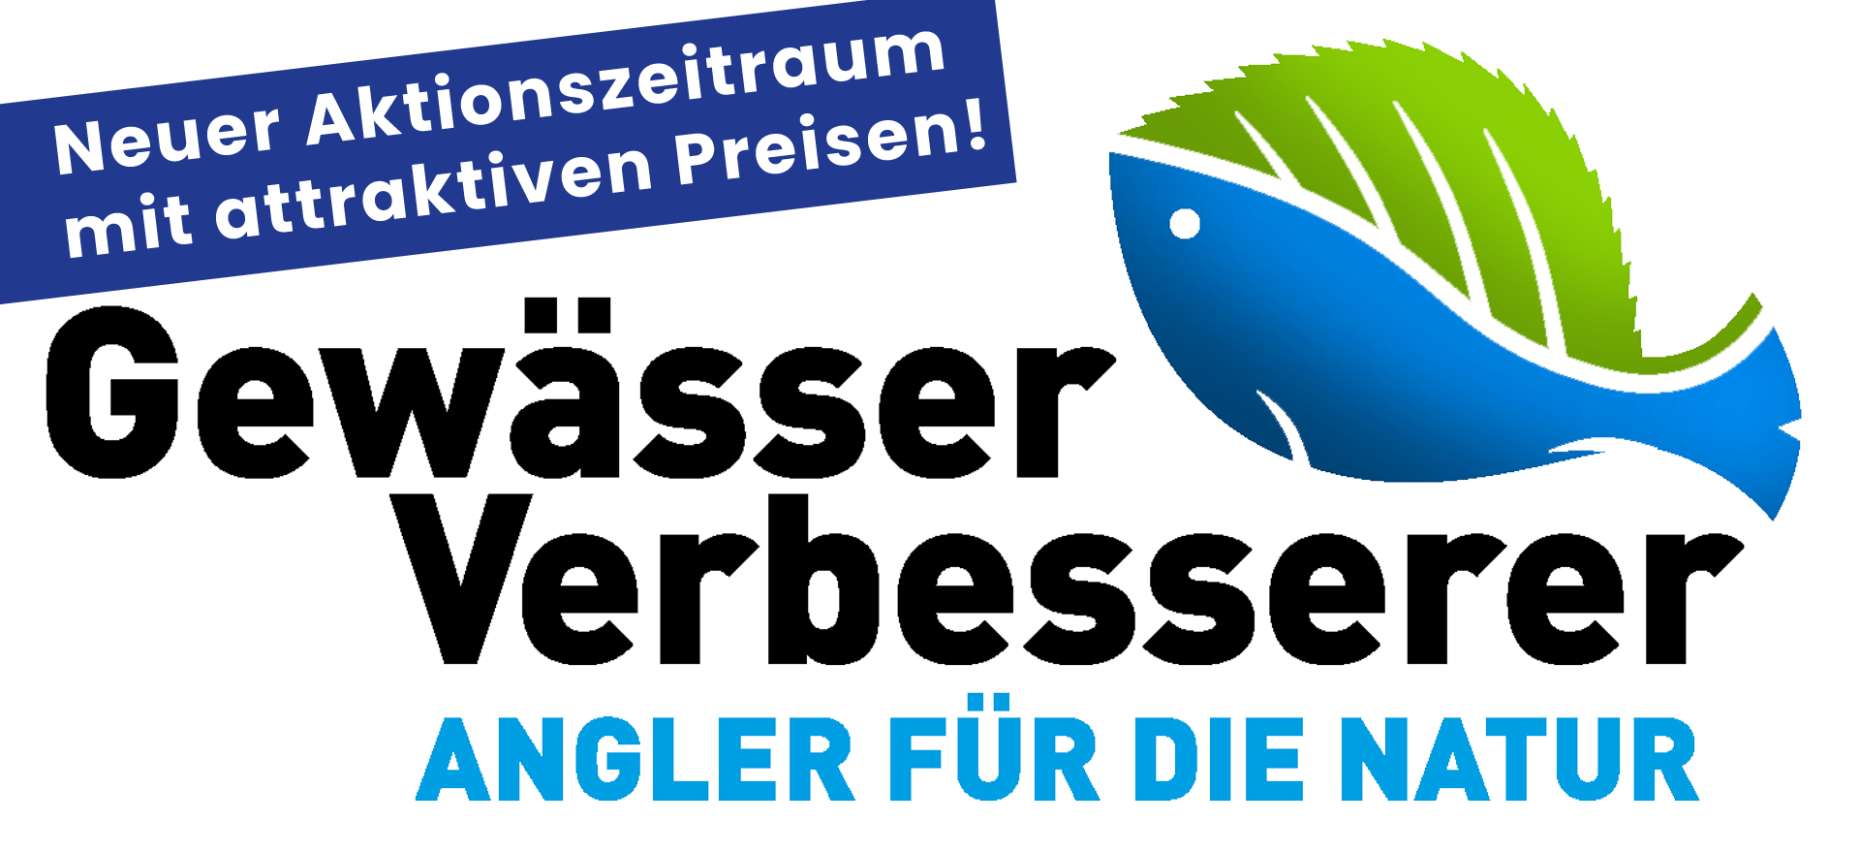 Relaunch Gewässer-Verbesserer: Angler für die Natur!